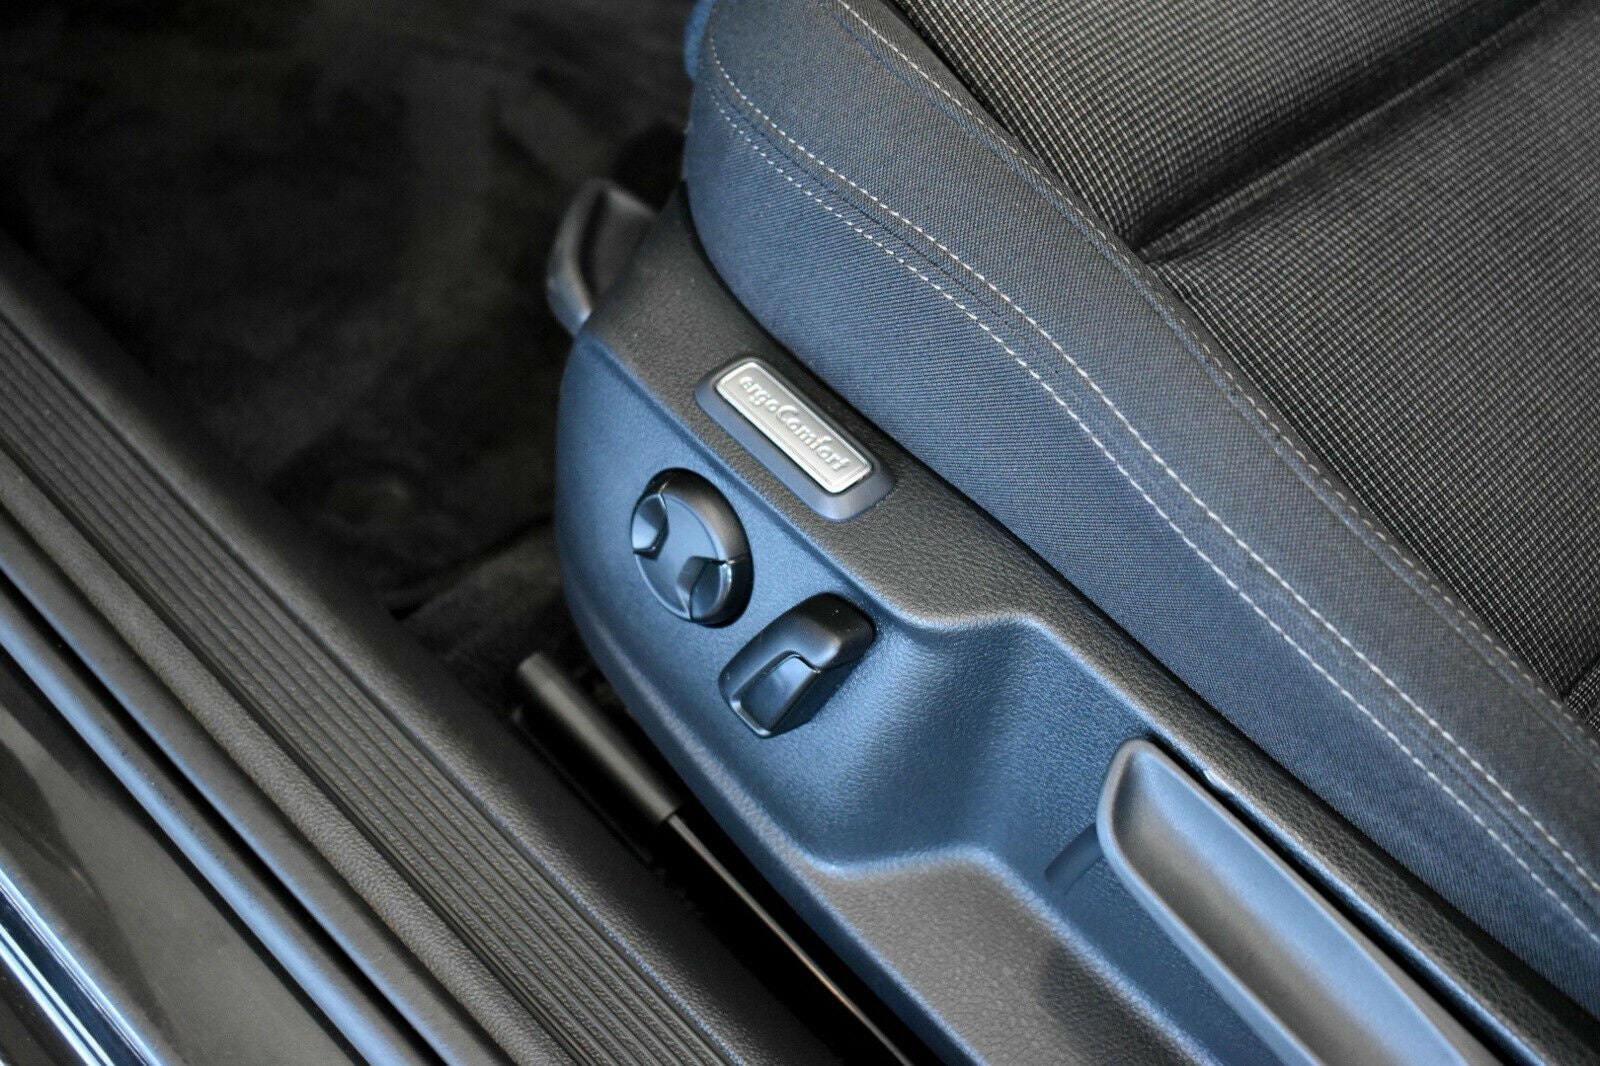 VW Passat TDi 150 Comfortline Premium Variant DSG full